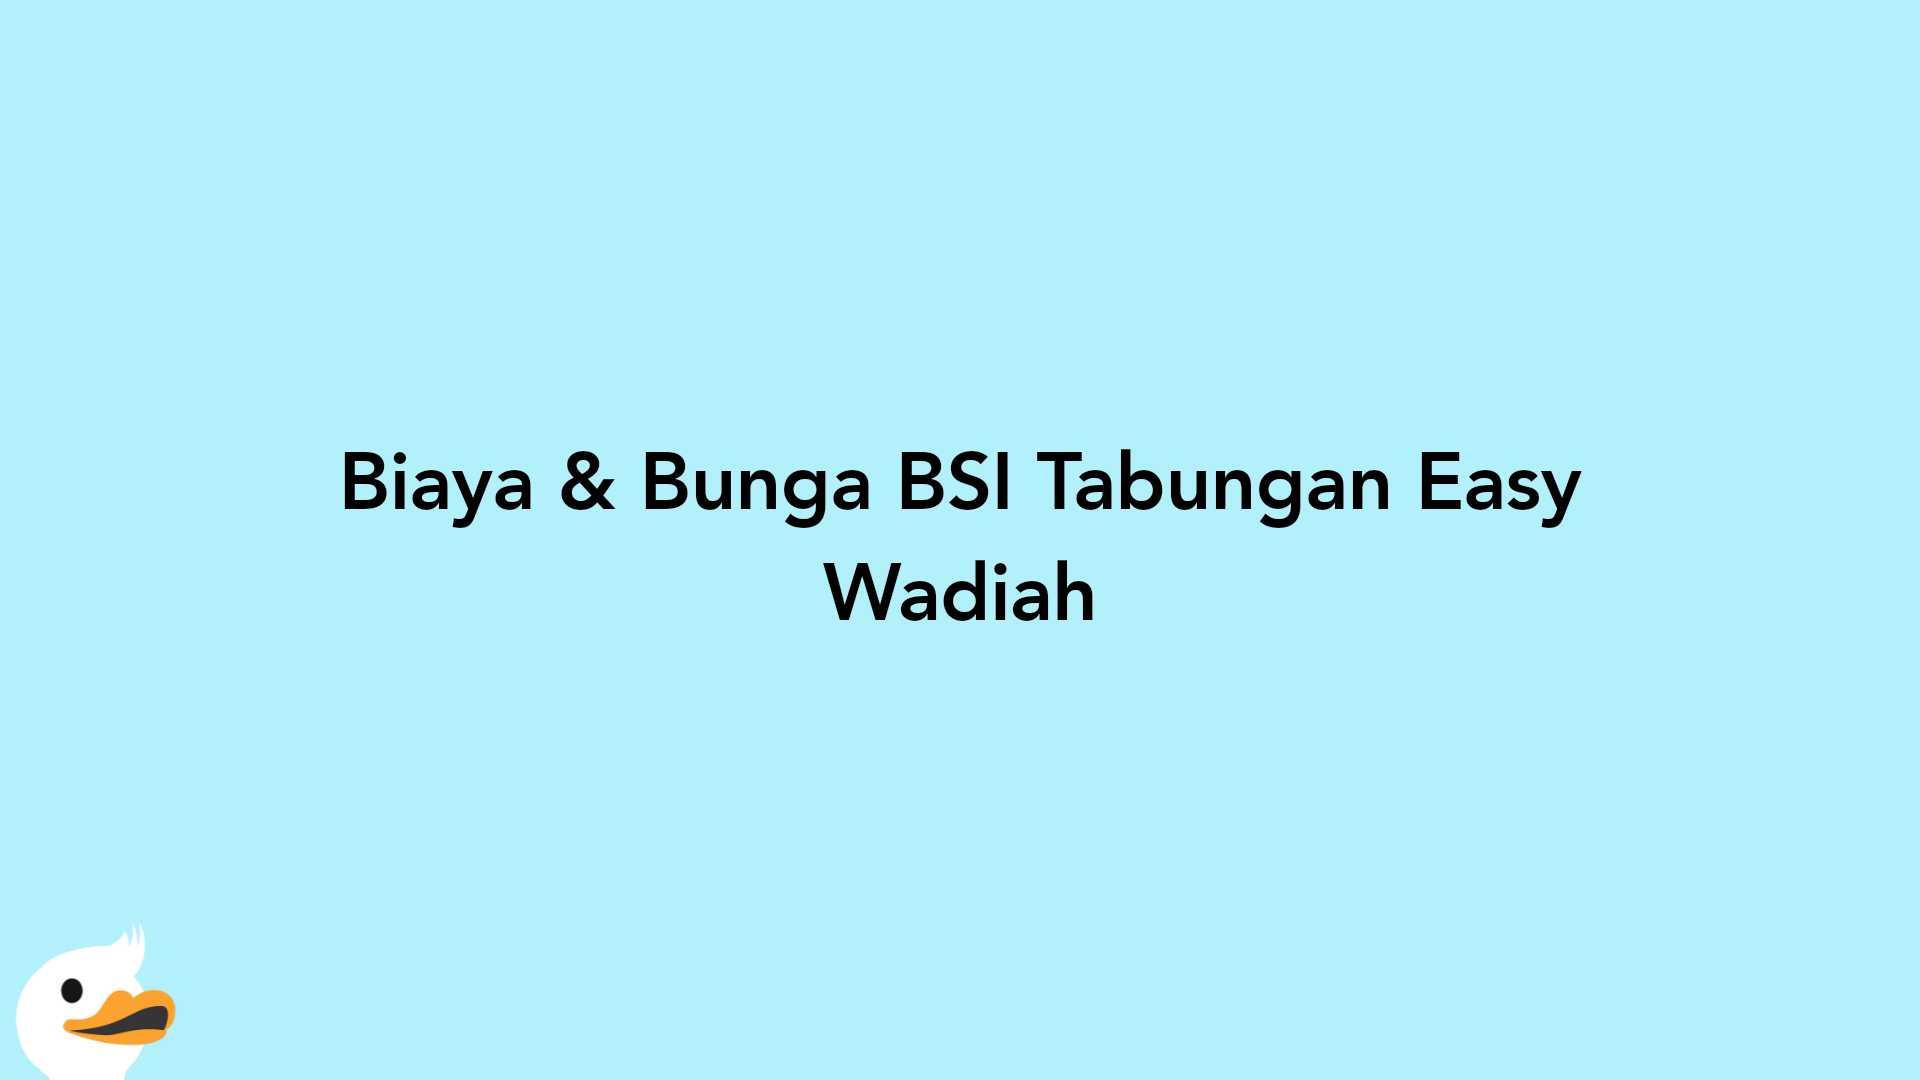 Biaya & Bunga BSI Tabungan Easy Wadiah